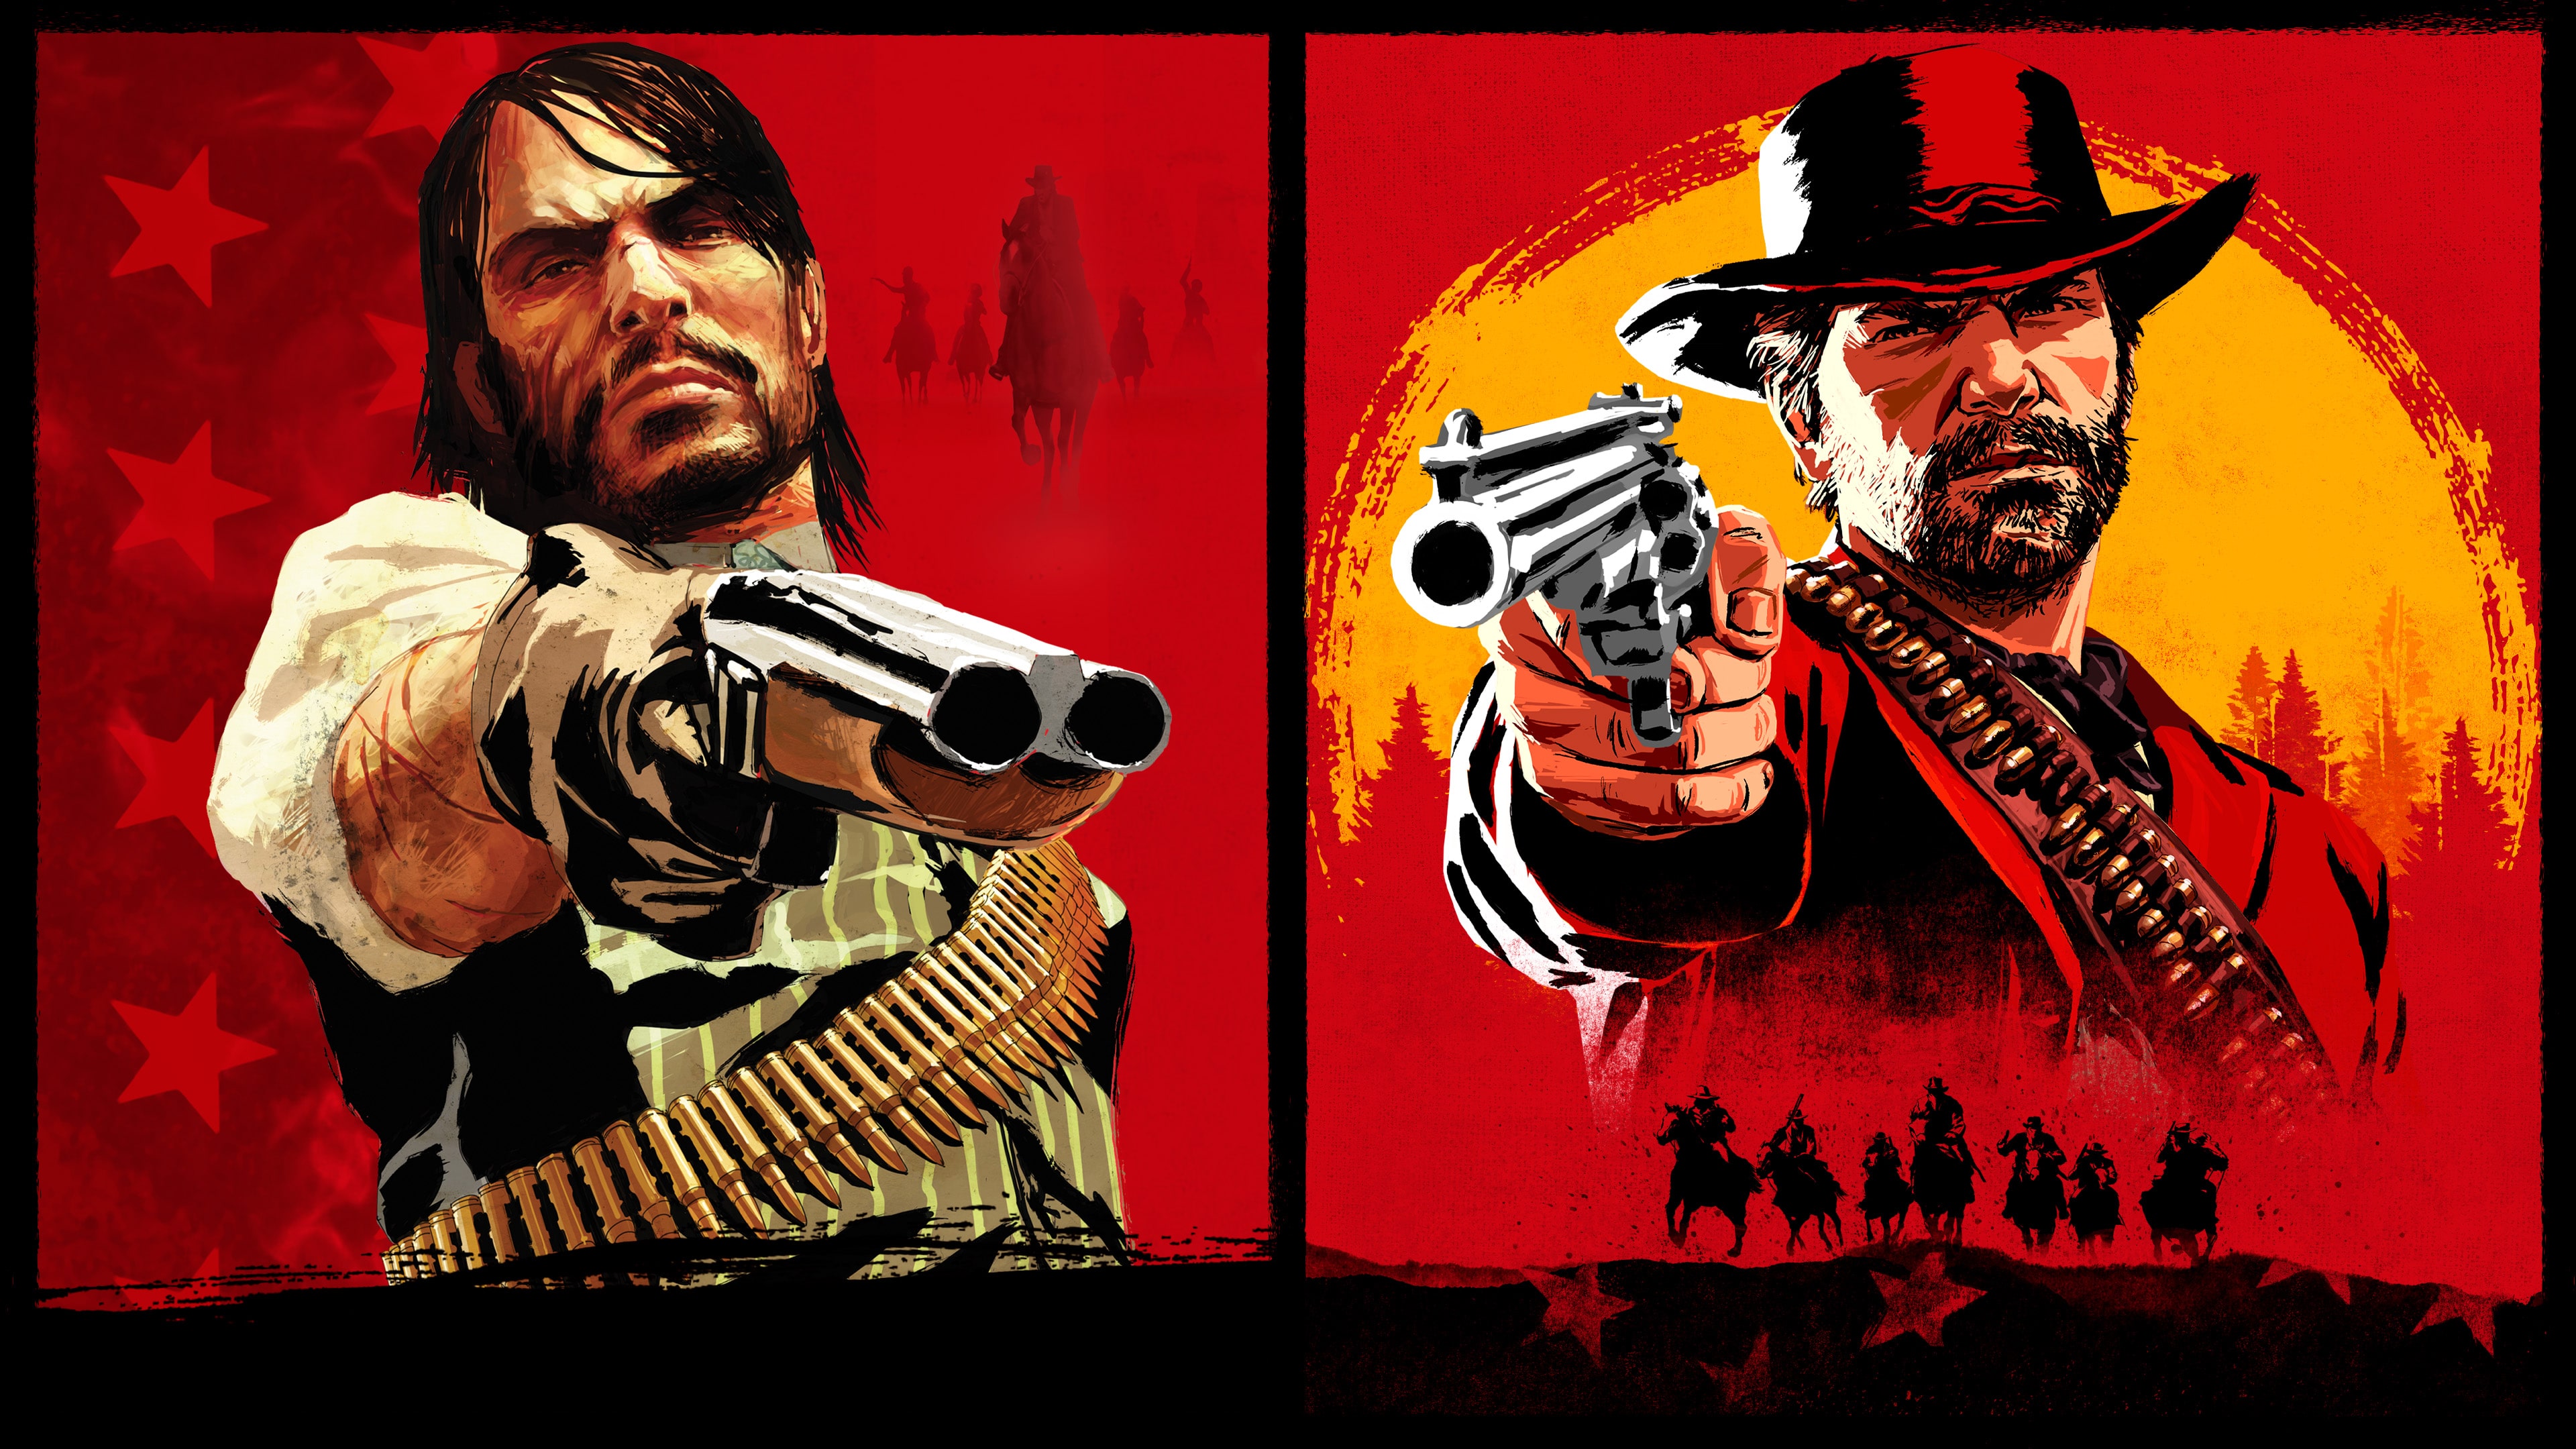 El primer Red Dead Redemption para PS4 y PS5 tumba su precio hasta dejarlo  en su mínimo histórico con esta oferta